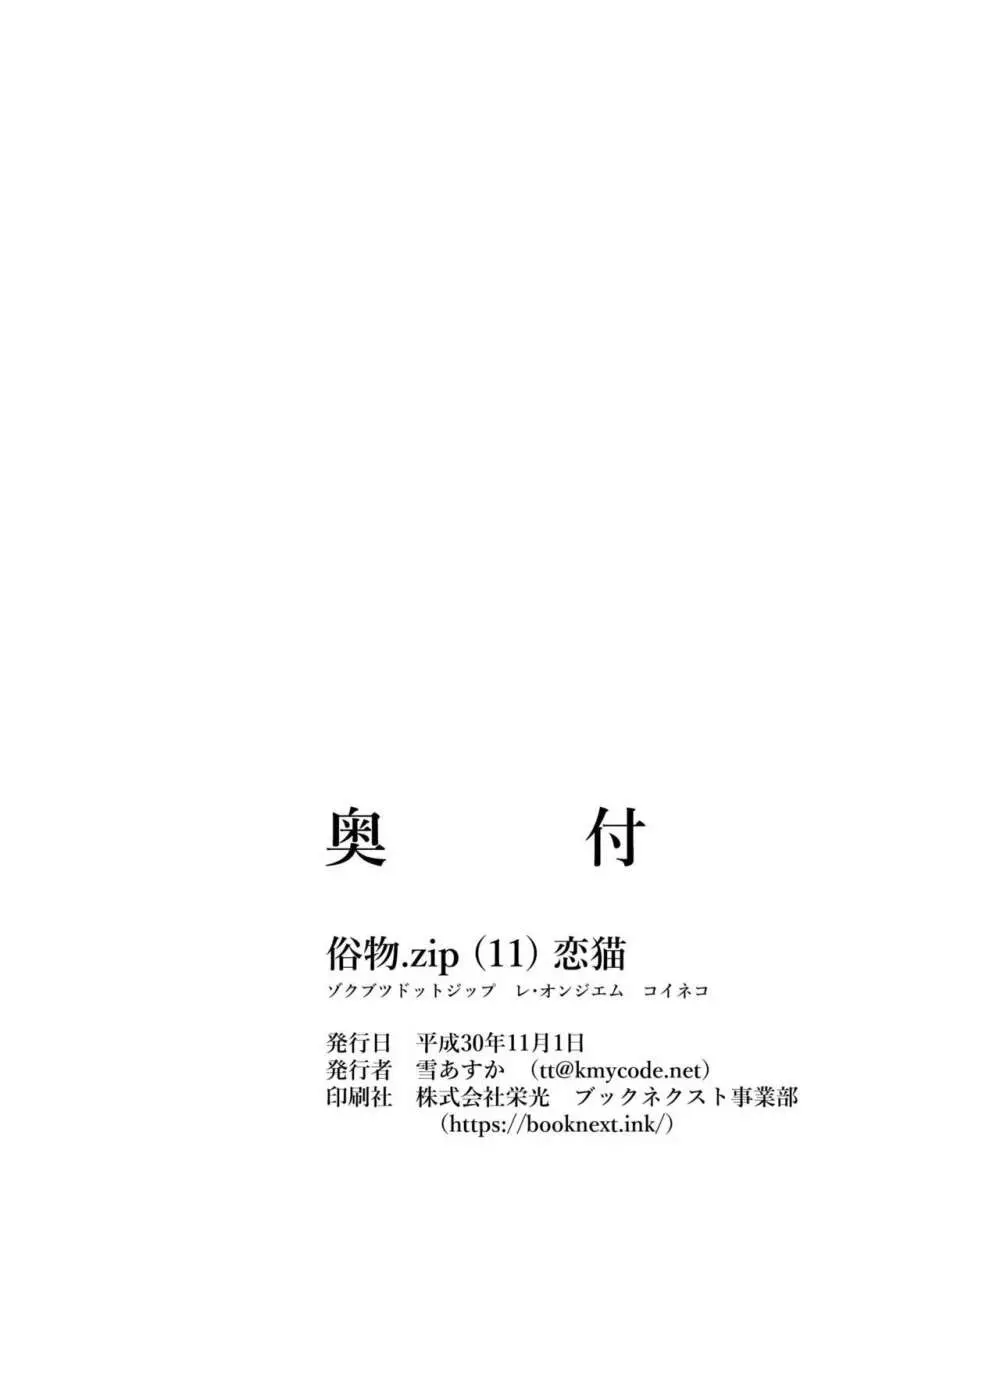 [俗物.zip (雪あすか)] 俗物.zip (11) 恋猫 [DL版] 30ページ